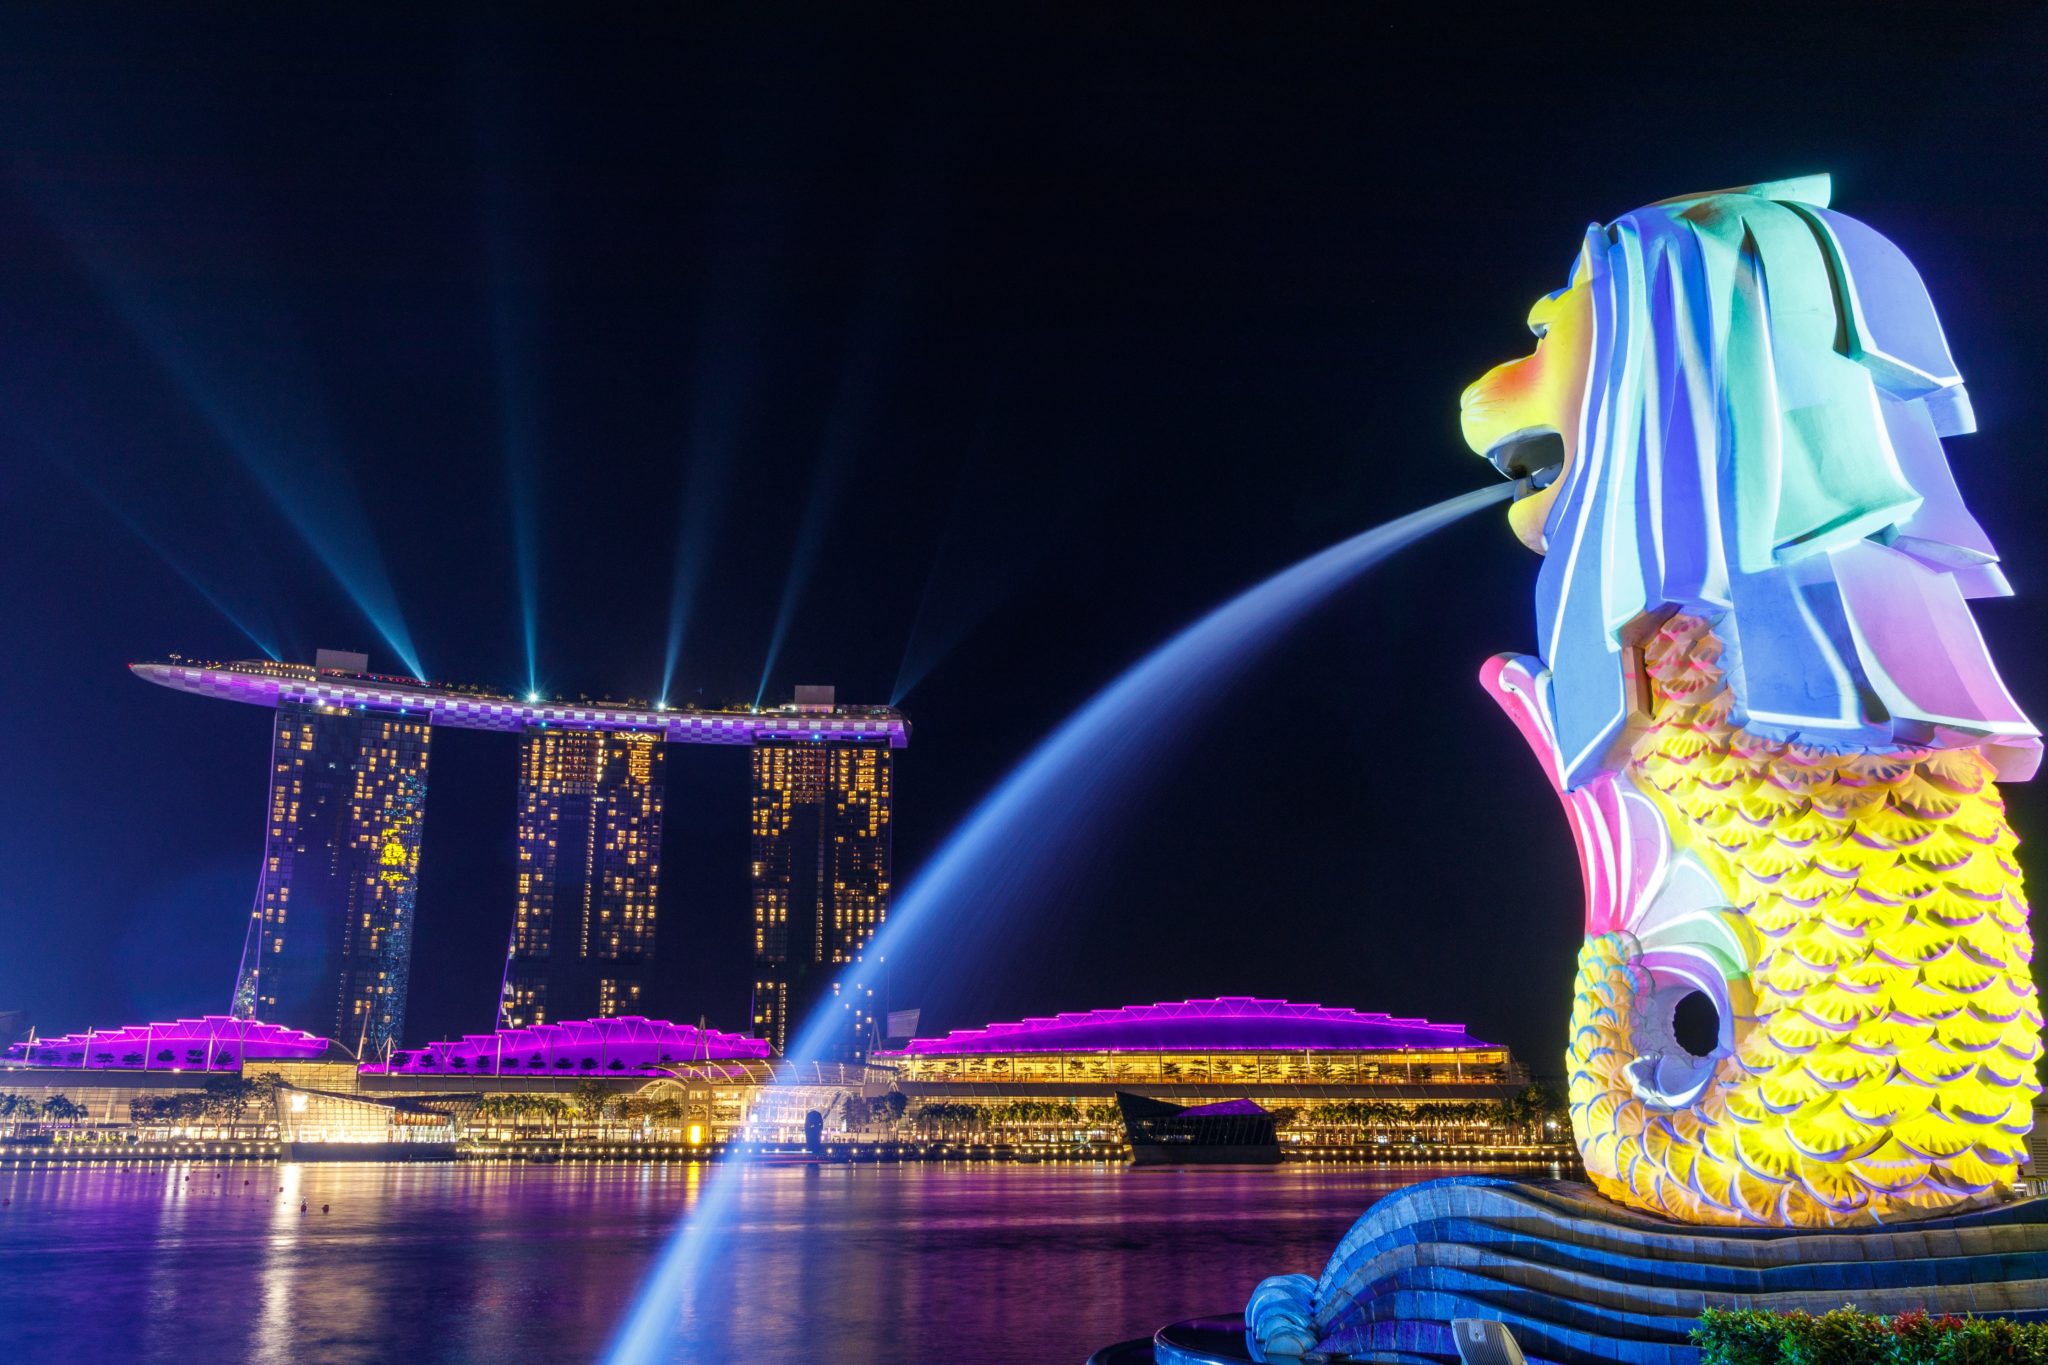 Fontanna lwa Merlion Park w Singapurze skierowana w stronę zatoki podświetlona kolorowymi światłami